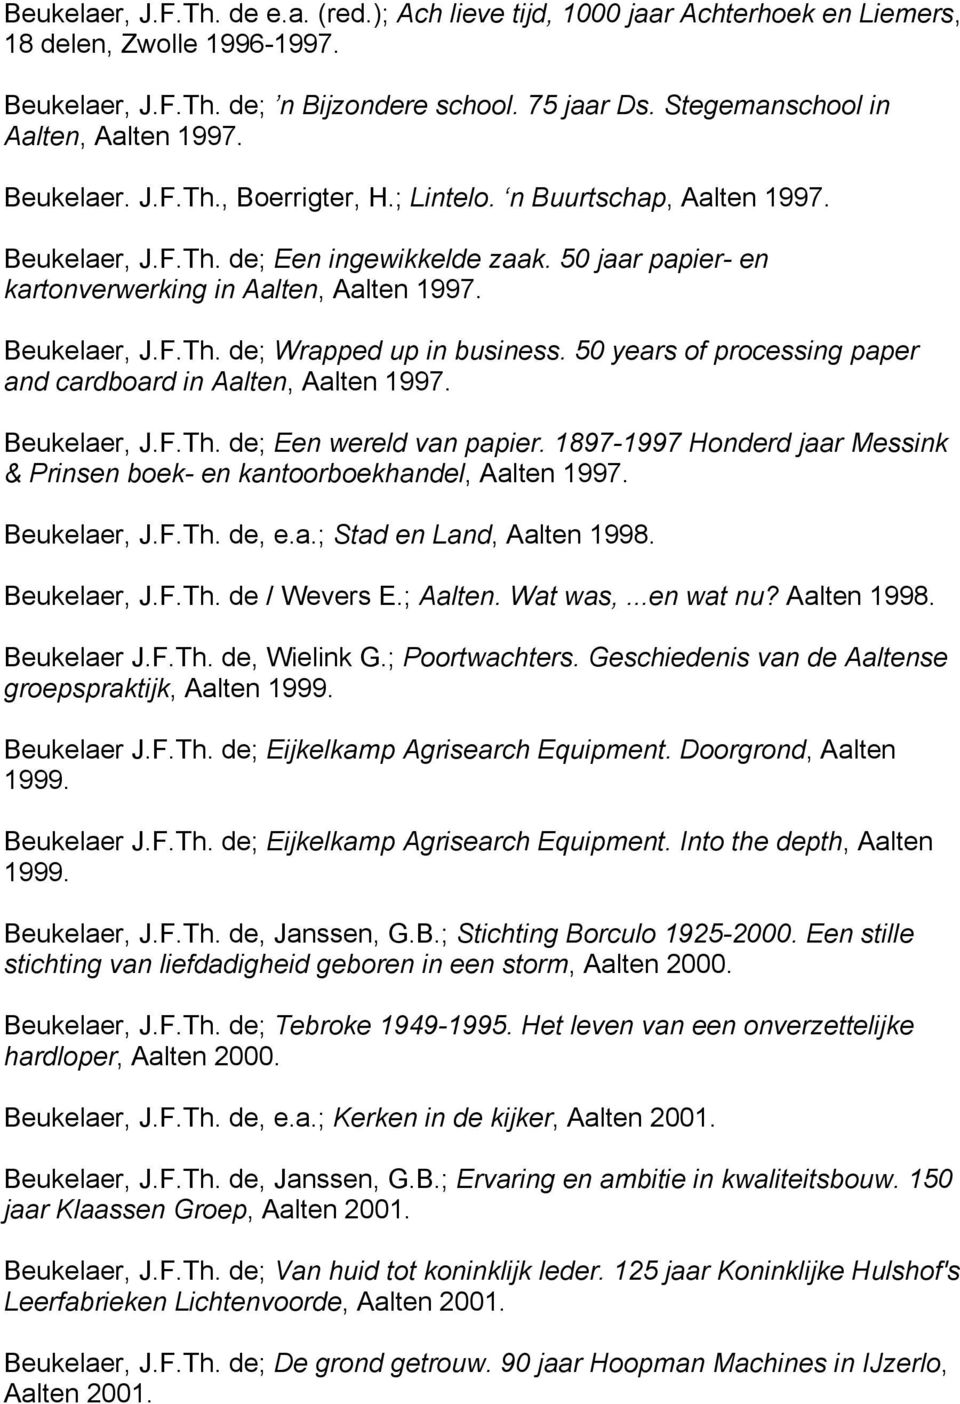 50 jaar papier- en kartonverwerking in Aalten, Aalten 1997. Beukelaer, J.F.Th. de; Wrapped up in business. 50 years of processing paper and cardboard in Aalten, Aalten 1997. Beukelaer, J.F.Th. de; Een wereld van papier.